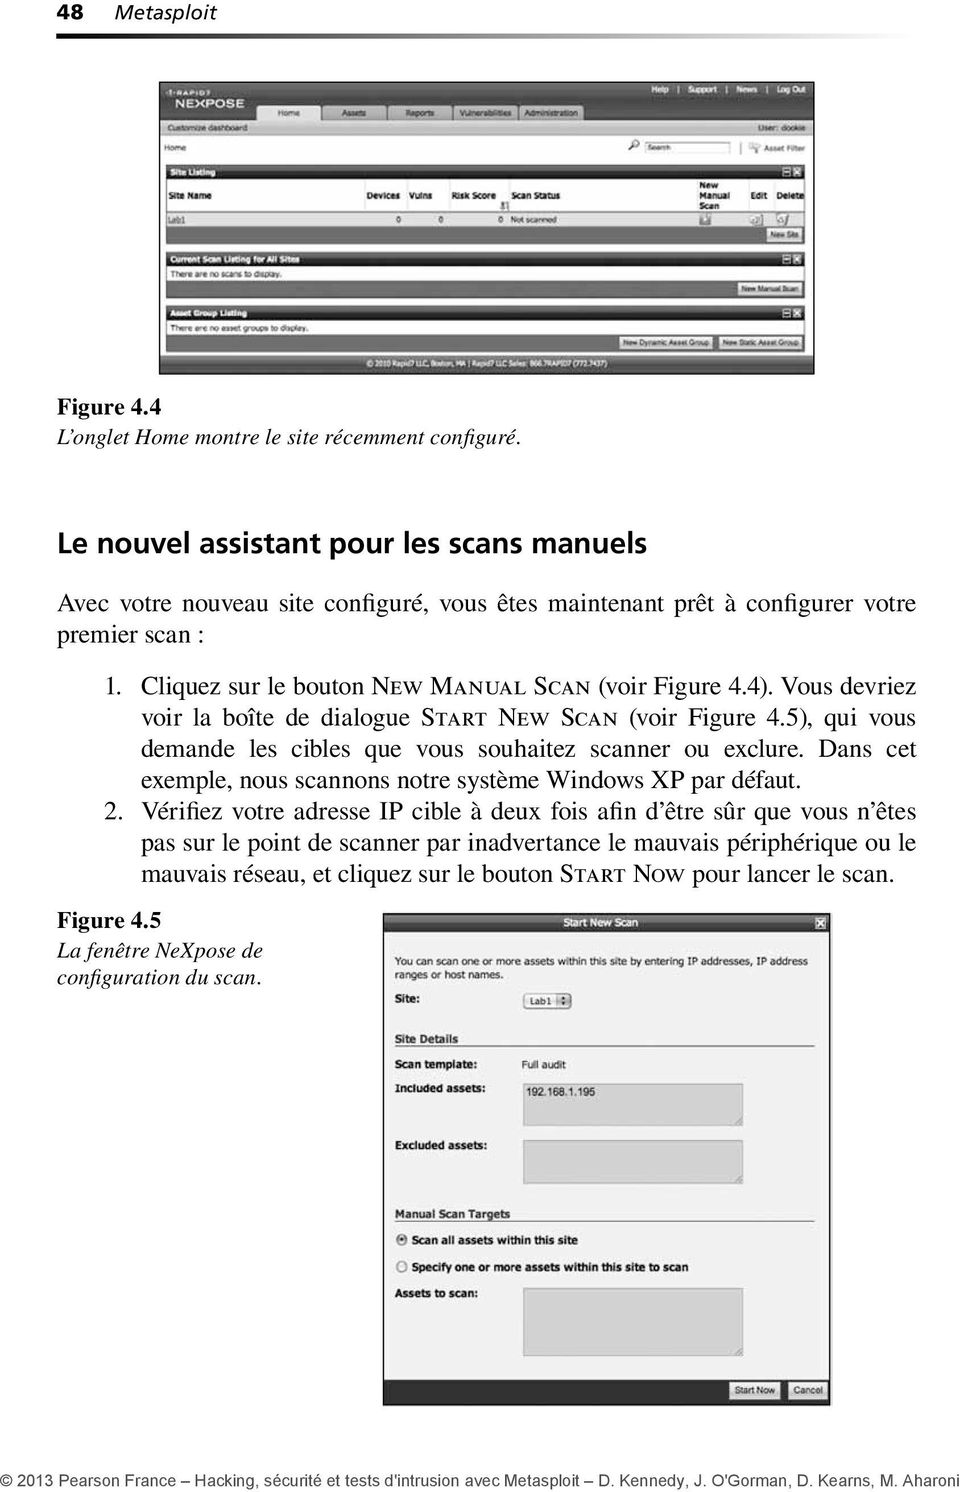 Cliquez sur le bouton New Manual Scan (voir Figure 4.4). Vous devriez voir la boîte de dialogue Start New Scan (voir Figure 4.